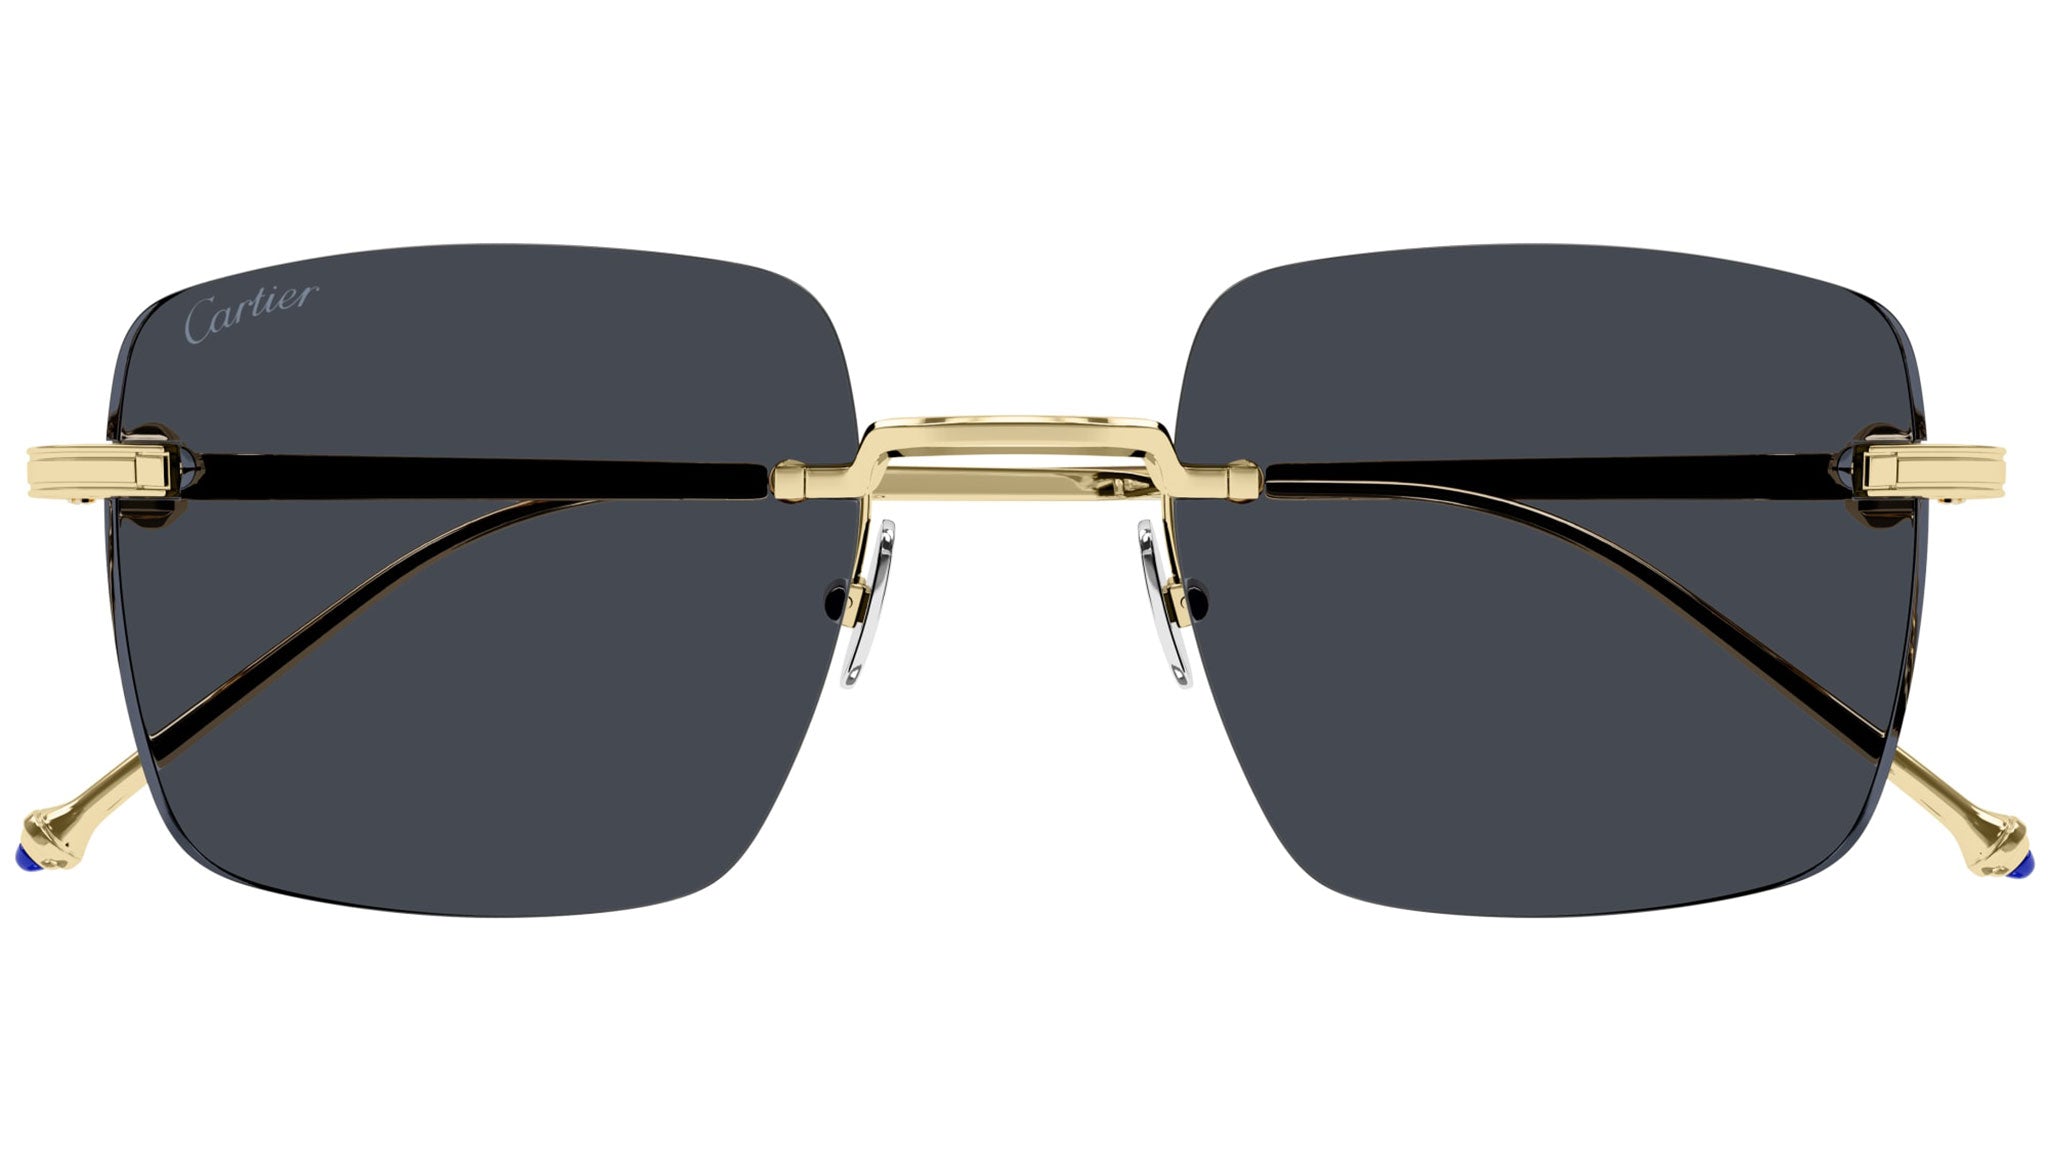 Cartier 002 Shiny Gold Sunglasses